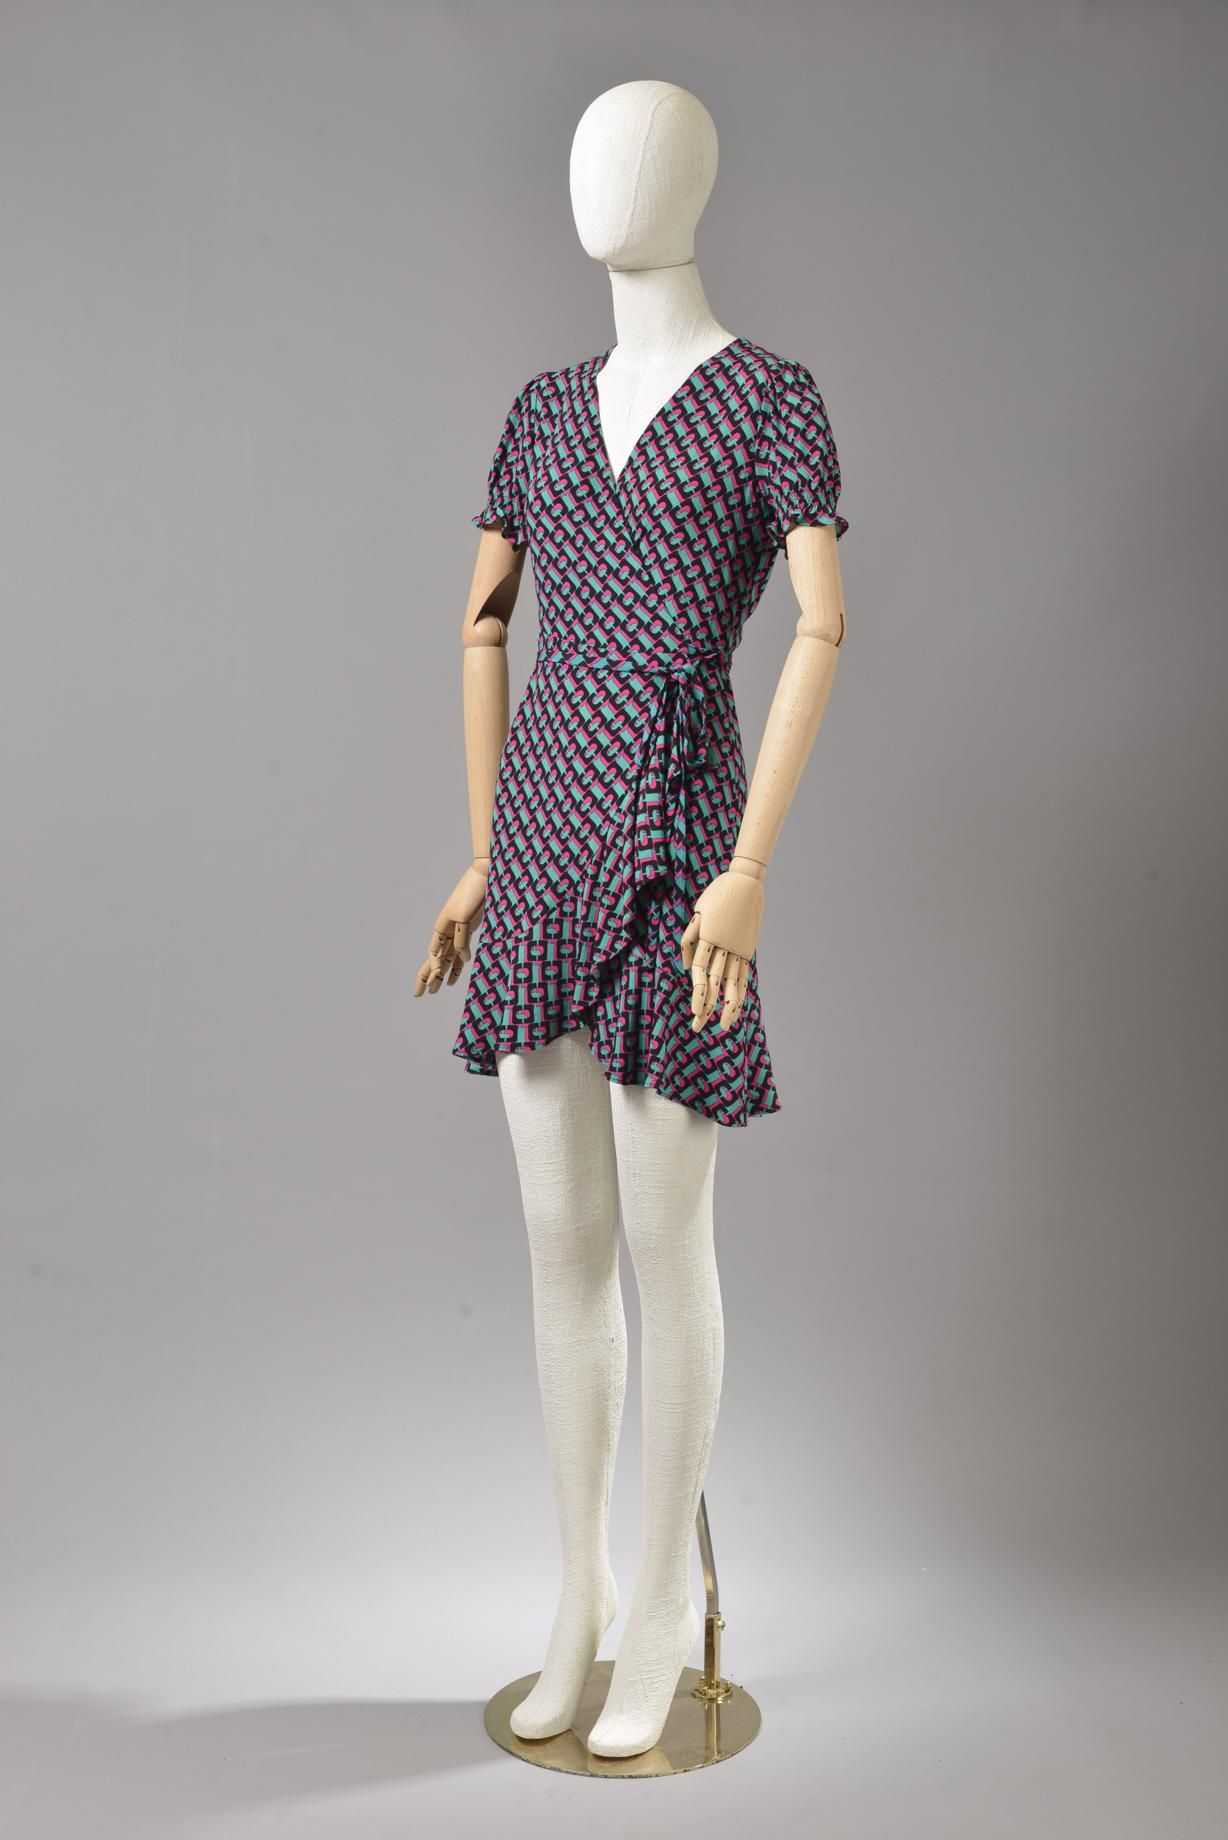 Null 
*尺寸XXS DVF - Diane Von Fürstenberg





套装包括。





-Viscose绉绸裹身裙，型号为 "DVF &hellip;